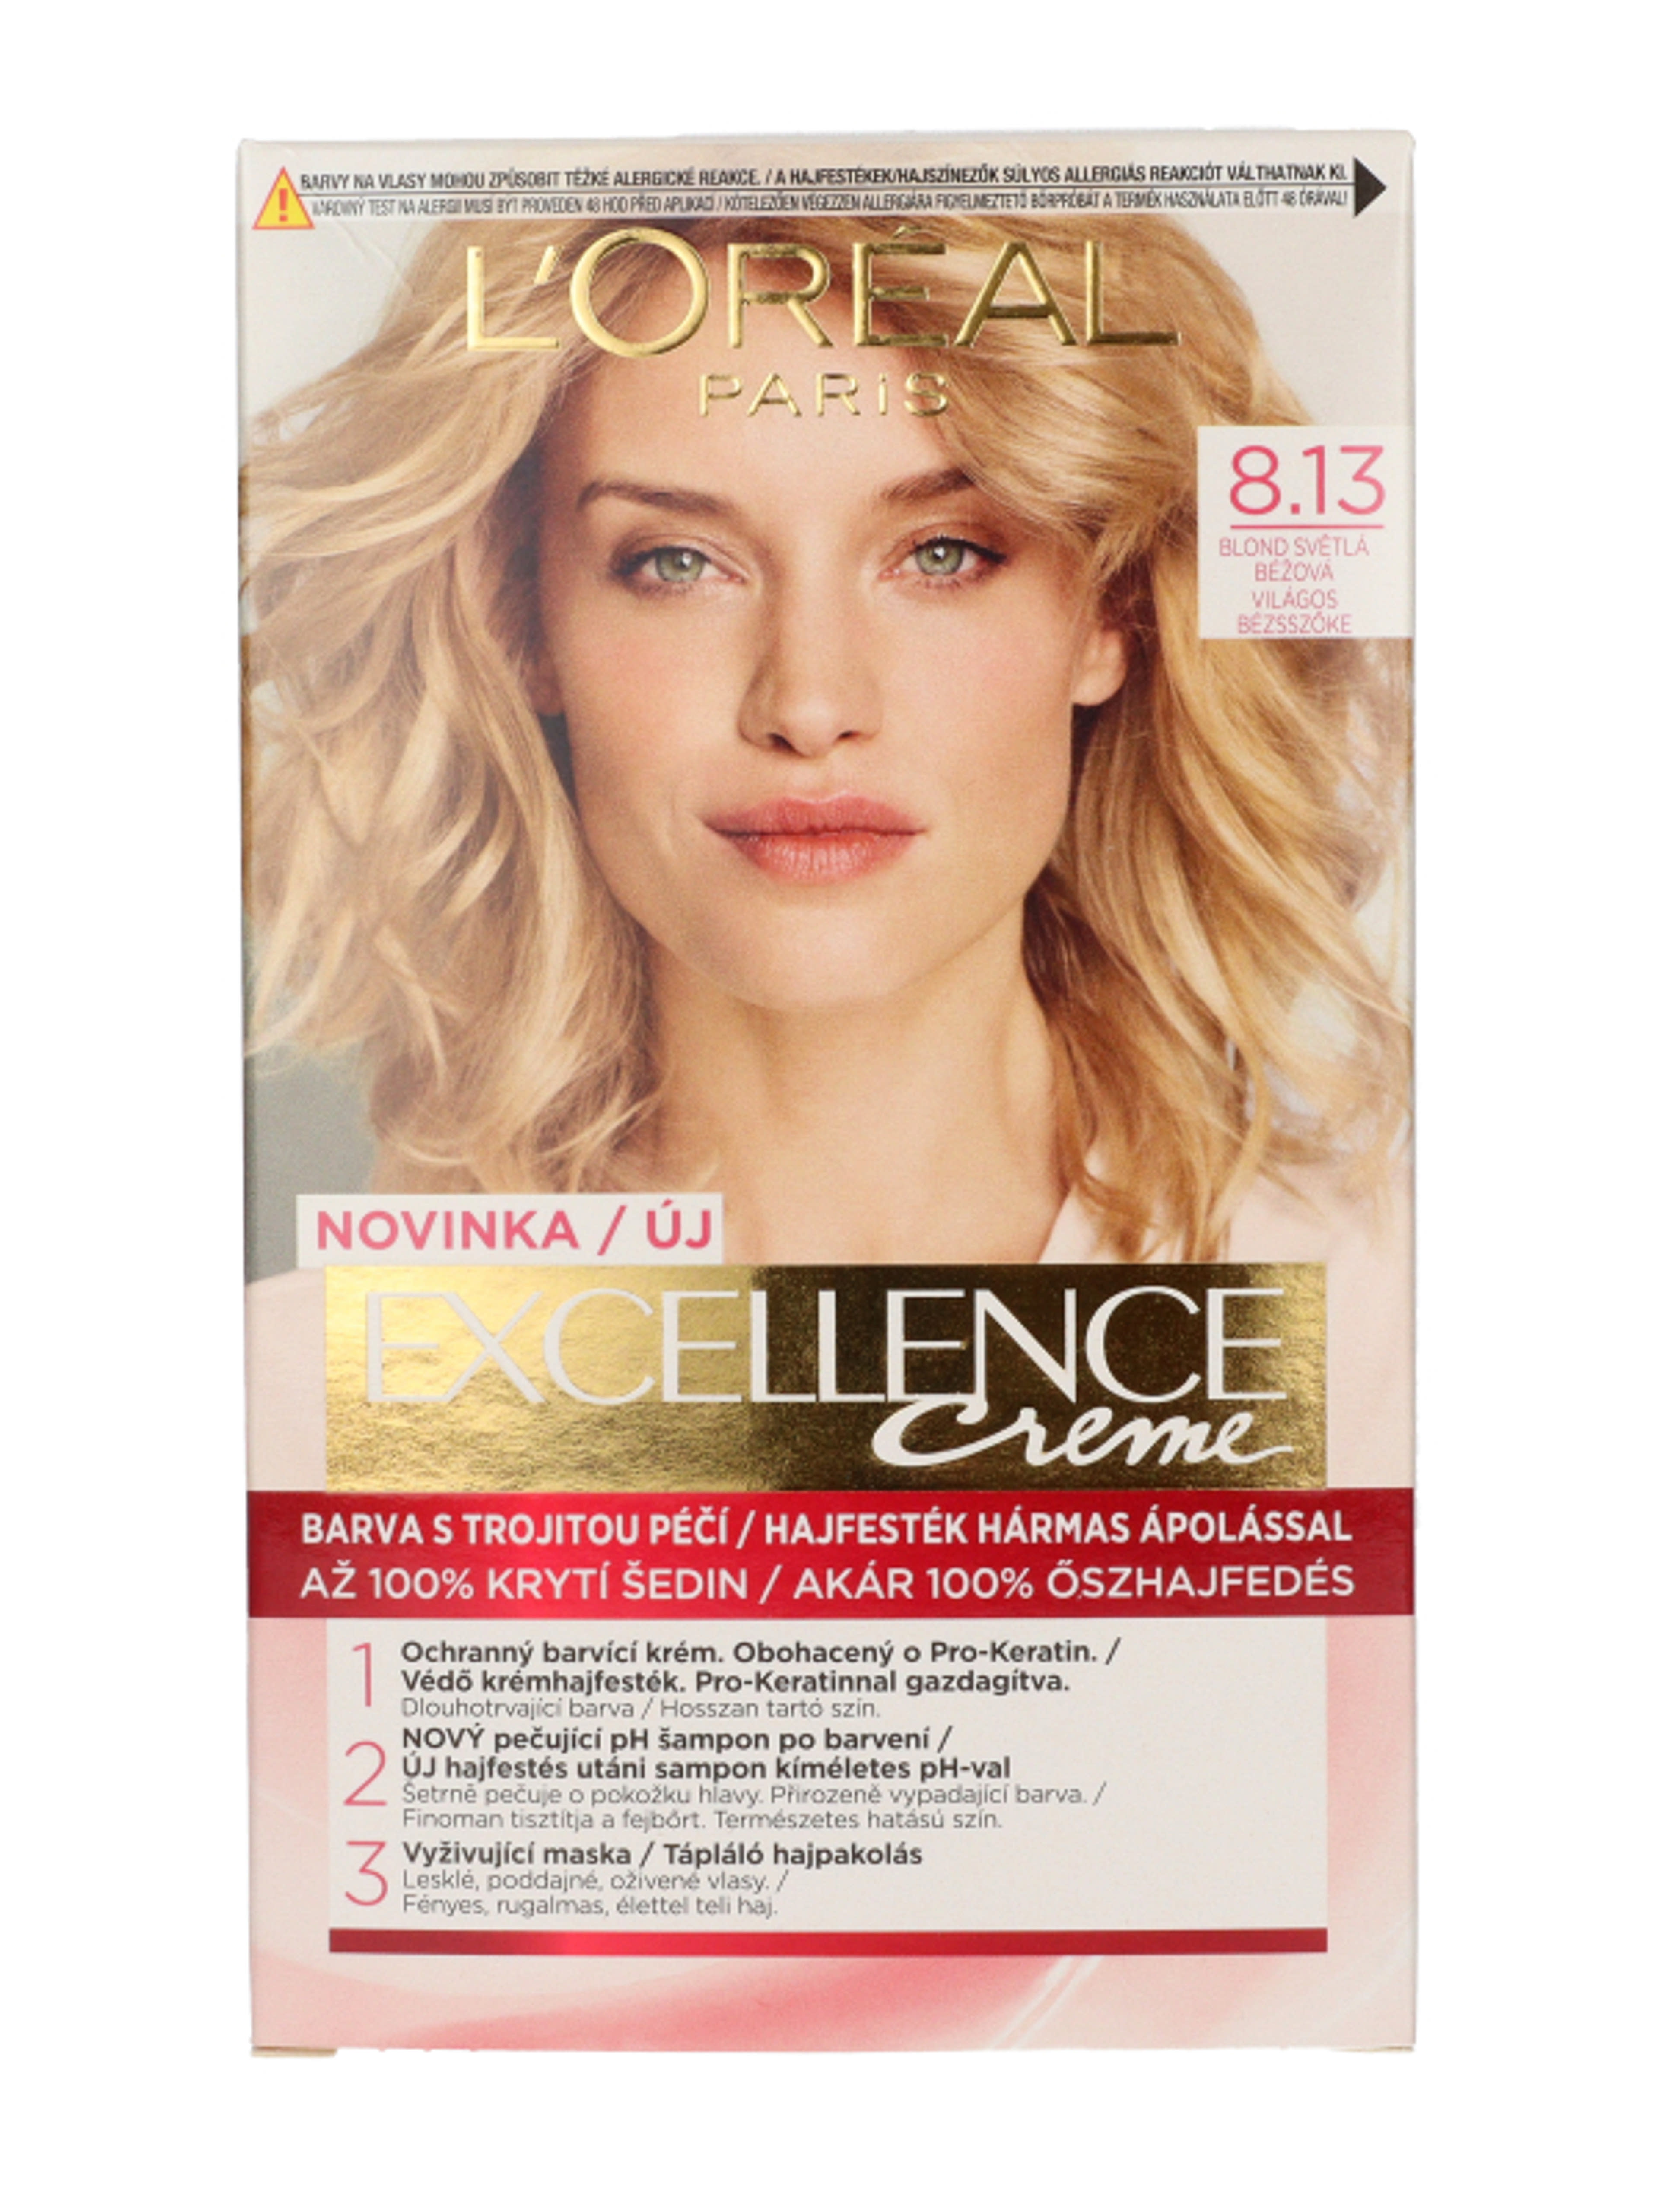 L'Oréal PAris Excellance hajfesték 8.13 /light beige blond - 1 db